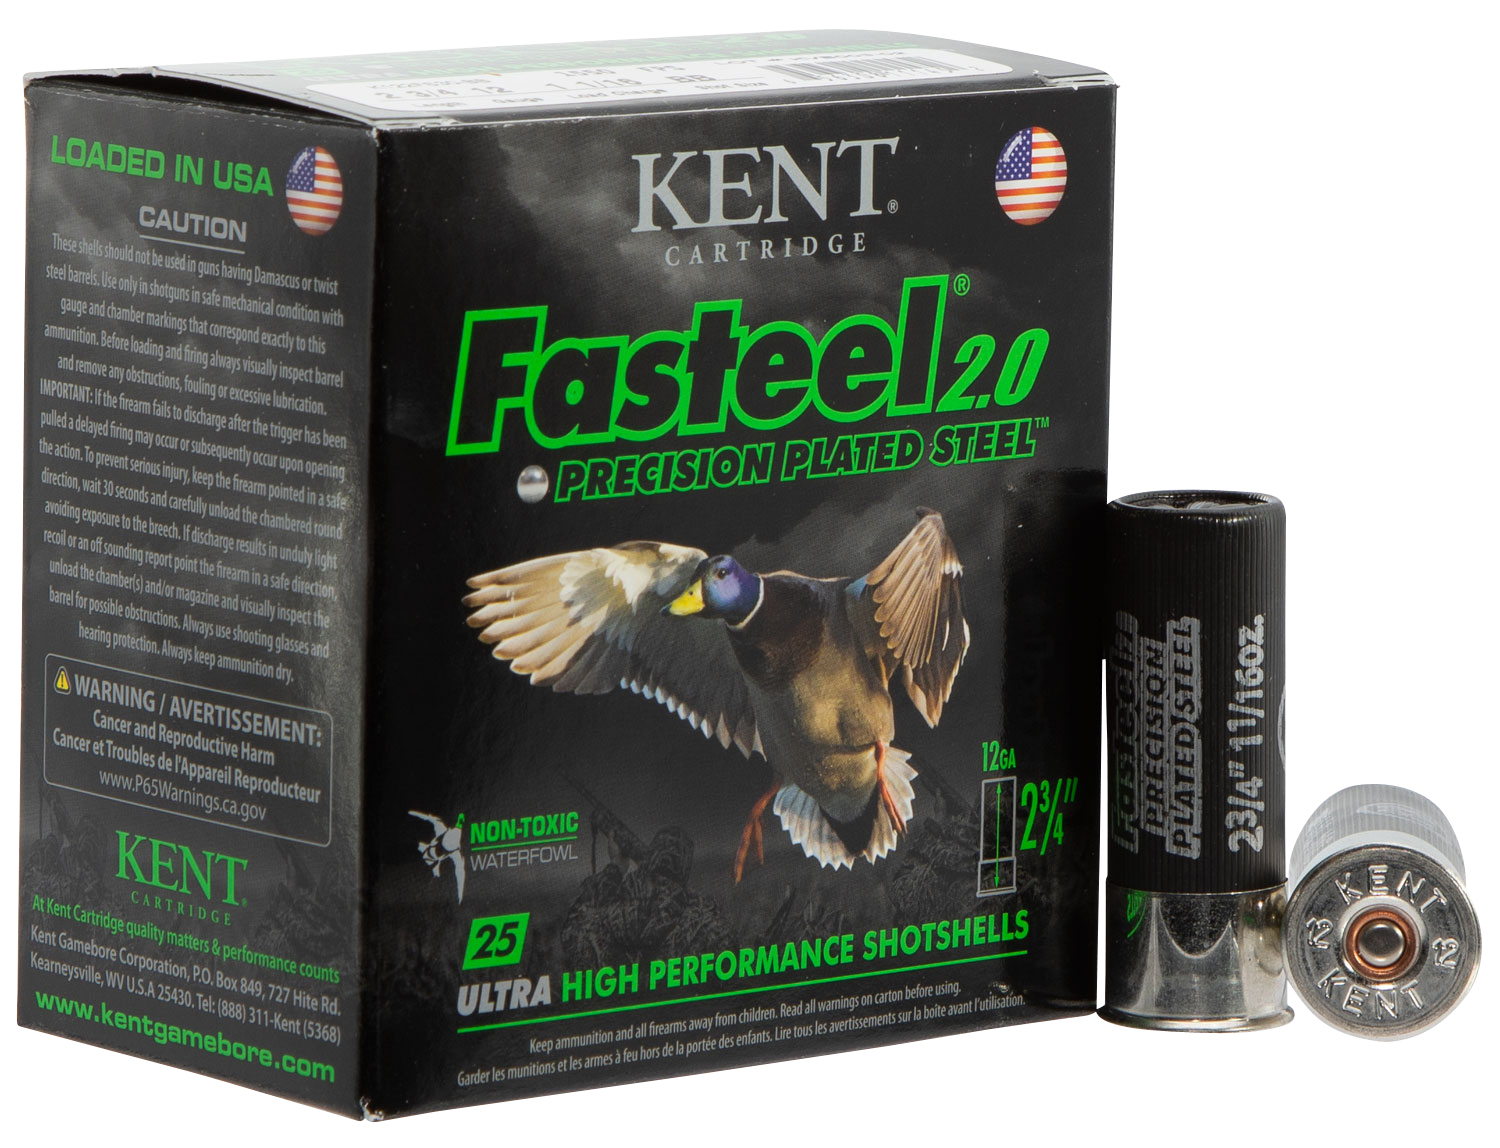 Kent Cartridge K122FS363 Fasteel 2.0  12 Gauge 2.75